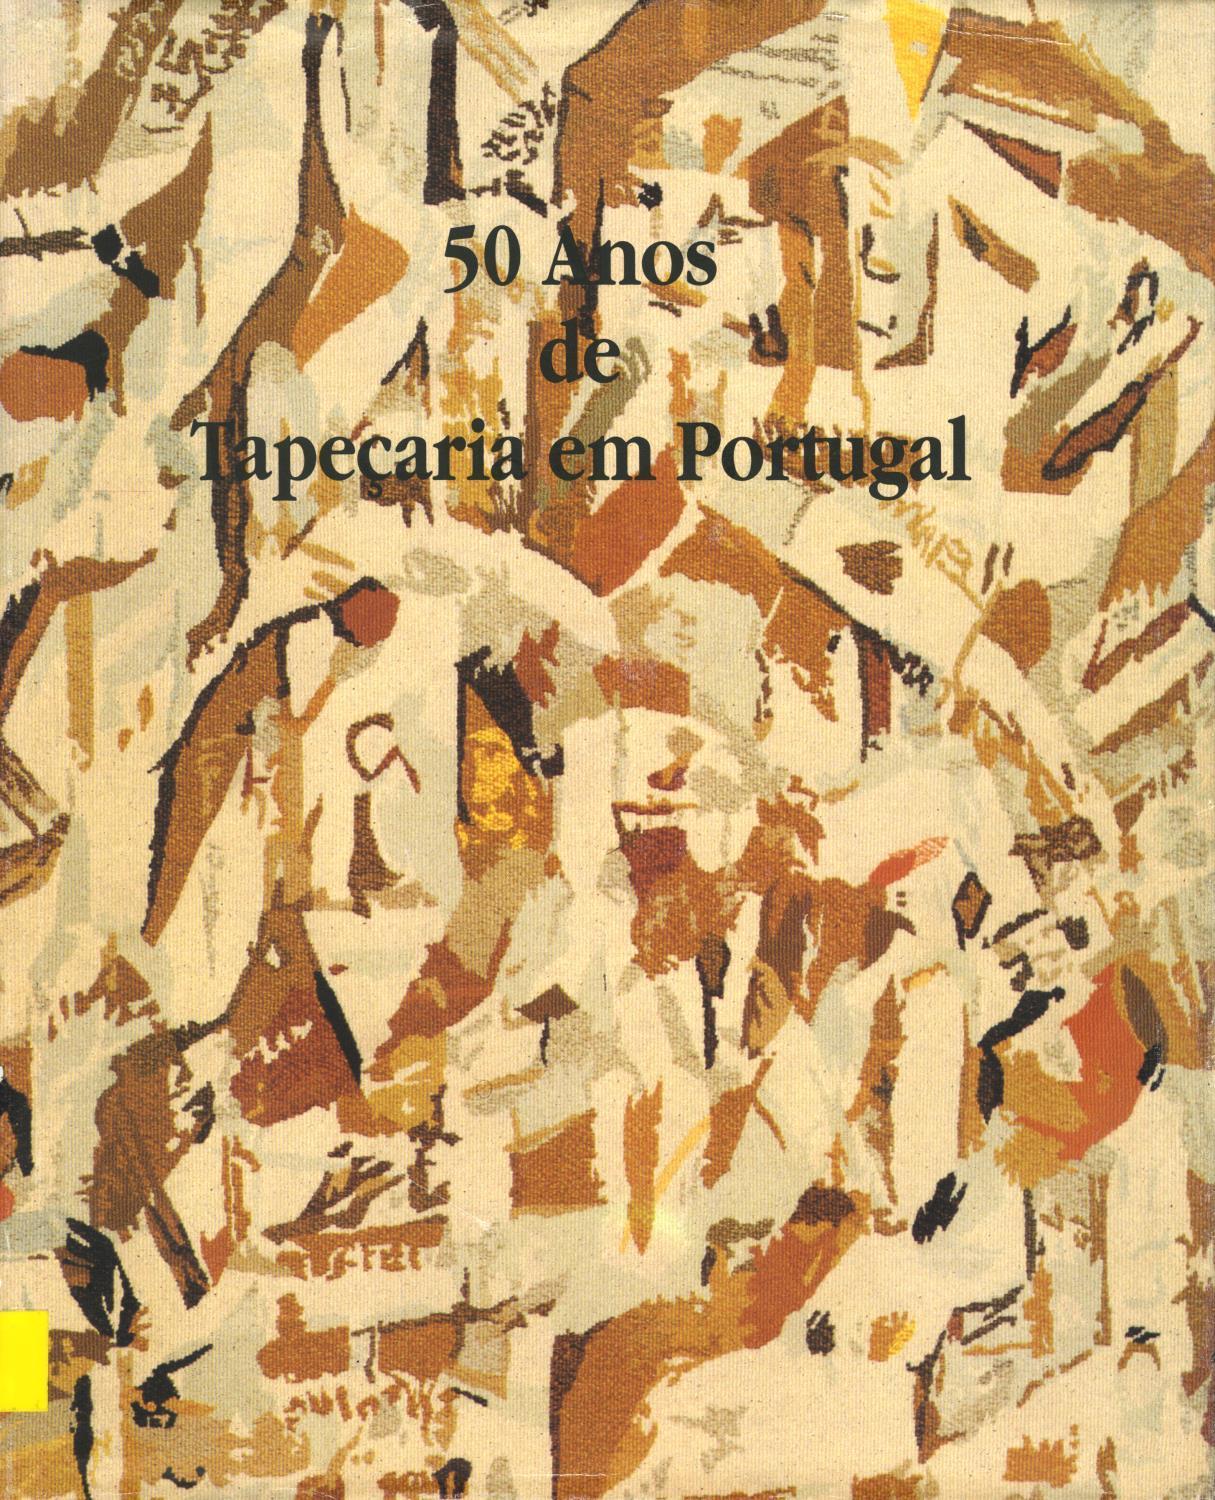 50 Anos de Tapeçaria em Portugal. Manufactura de Tapeçarias de Portalegre